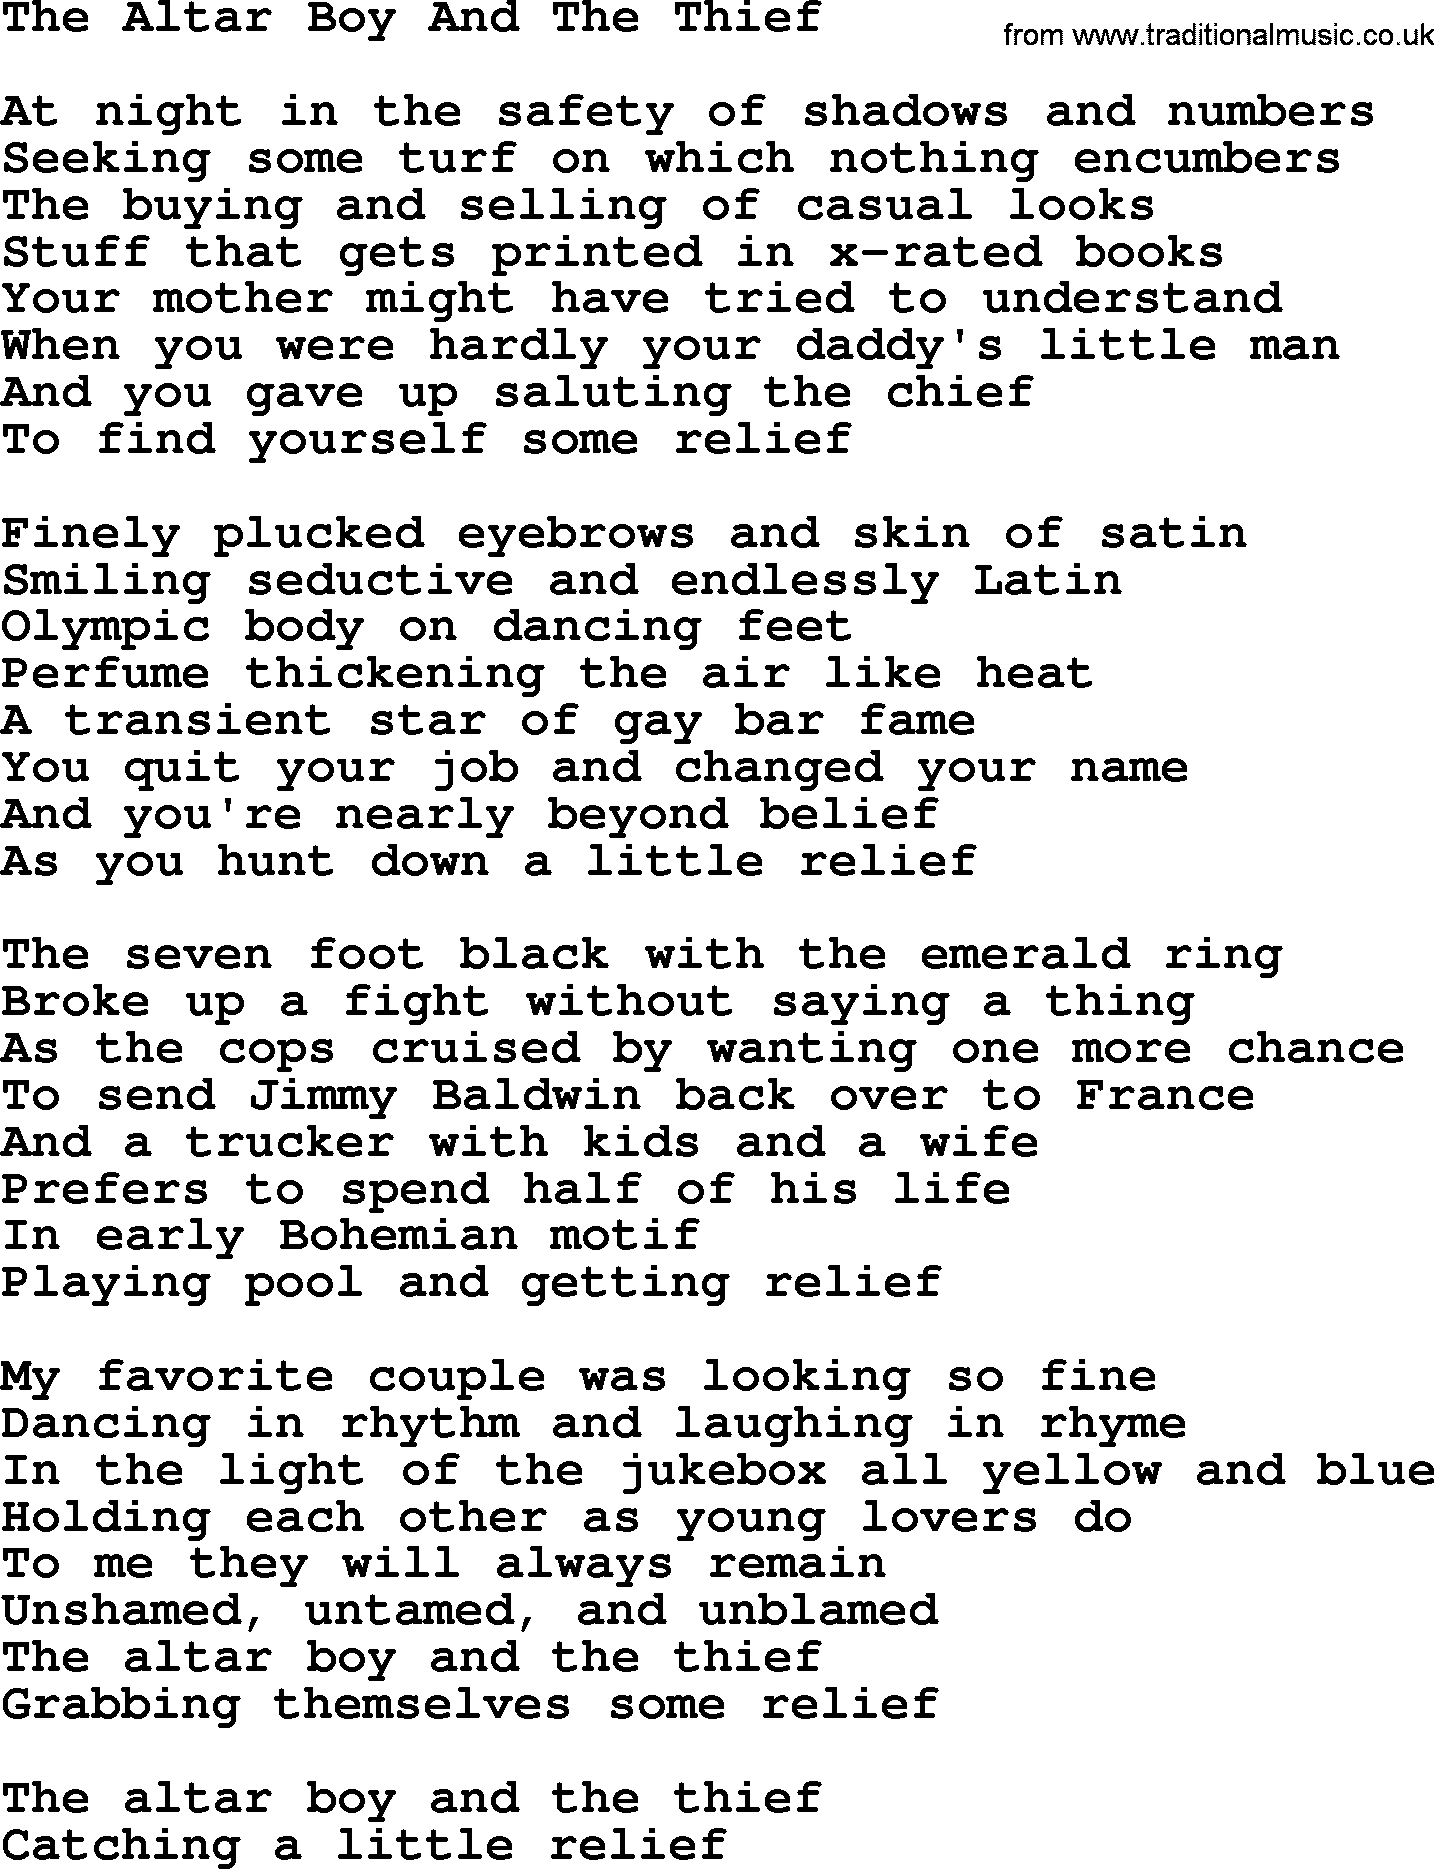 Joan Baez song The Altar Boy And The Thief, lyrics